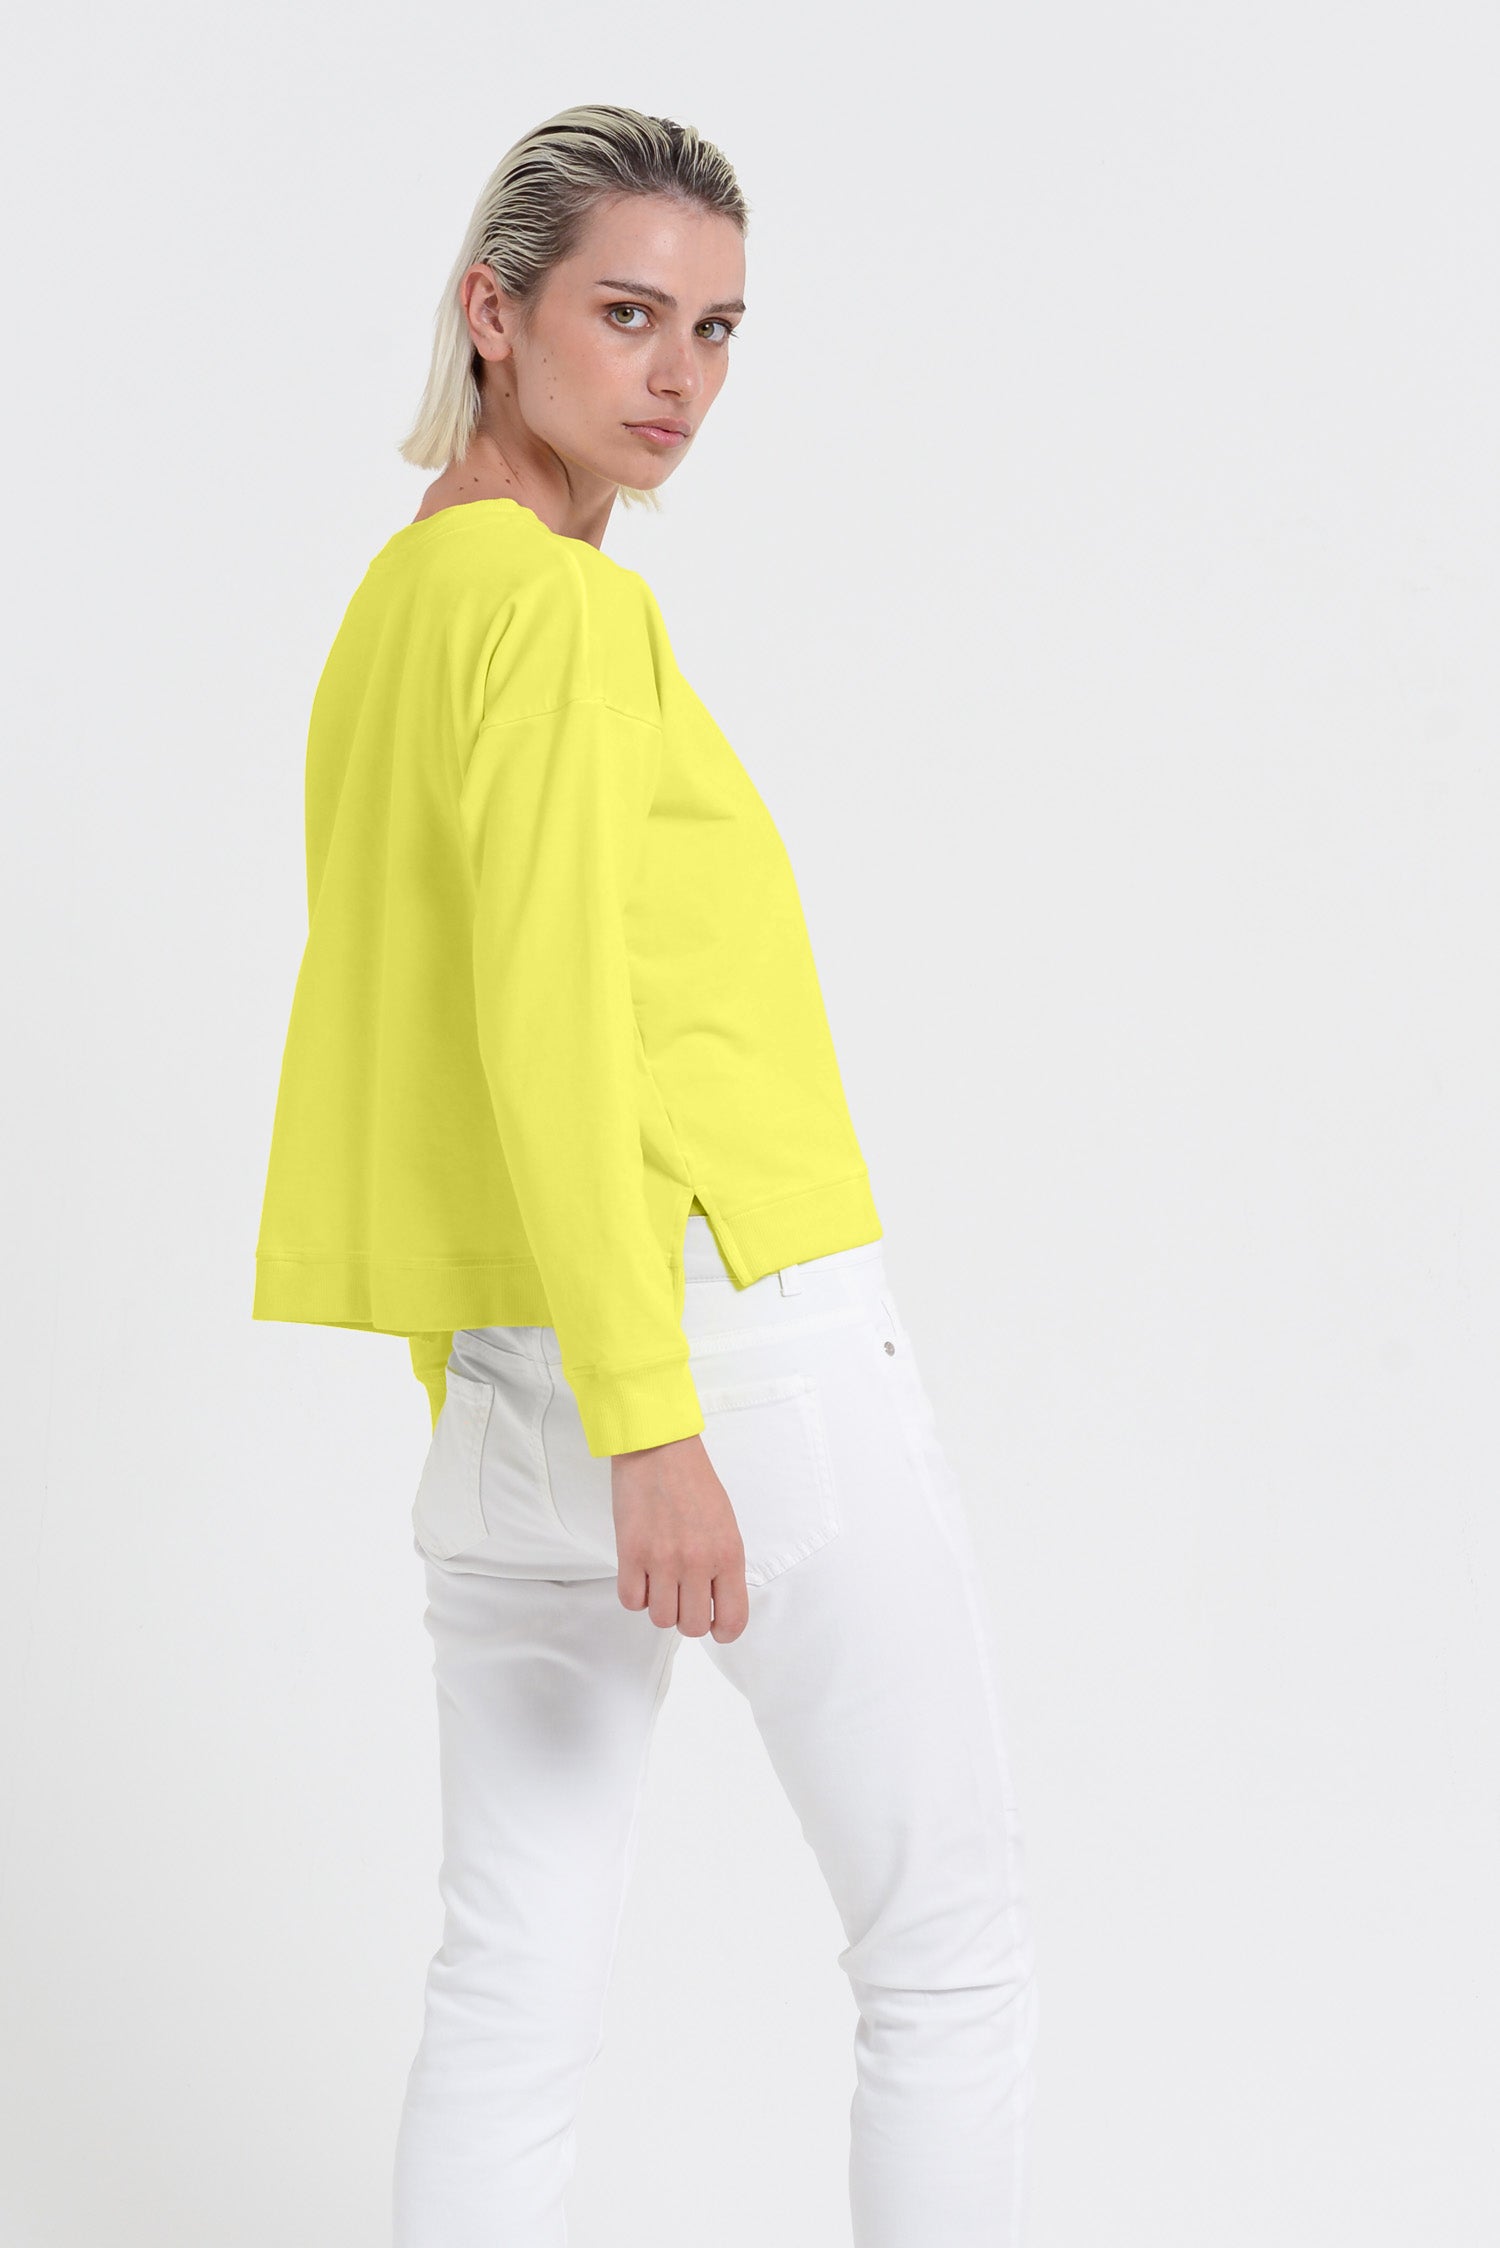 Roxie Sweatshirt - Women's Cropped Cotton Sweatshirt - Lime